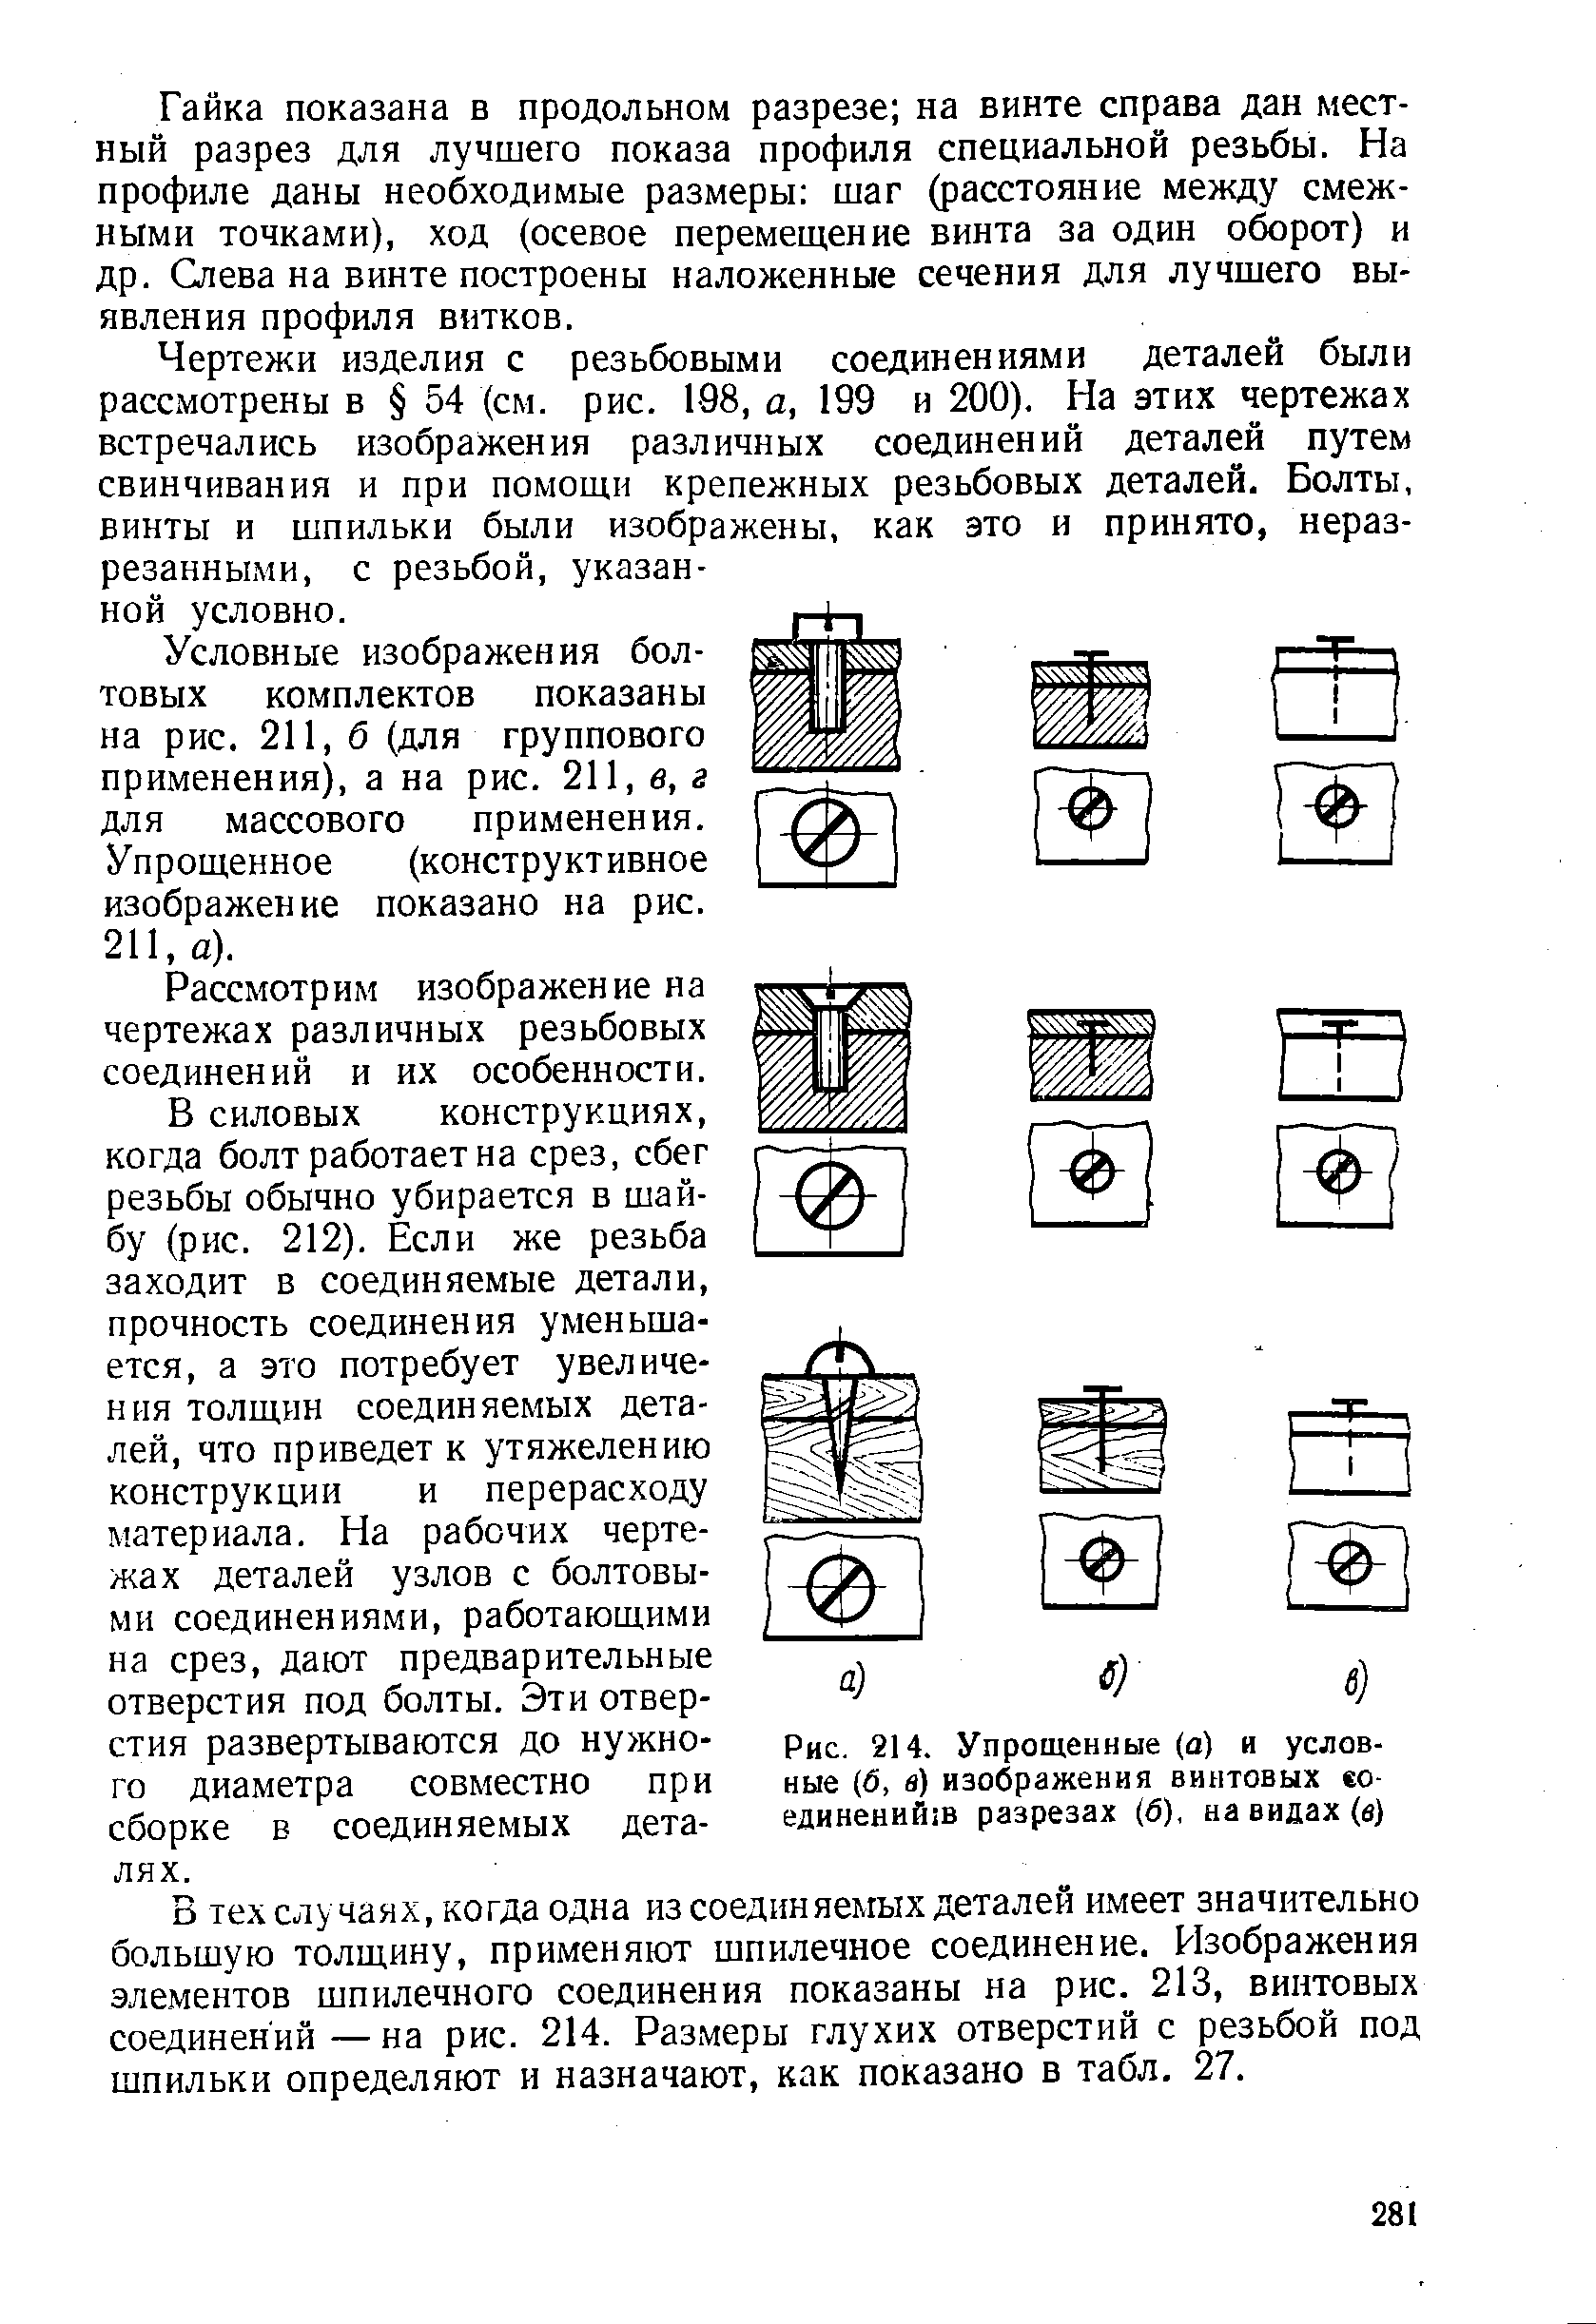 Рис. 214. Упрощенные (а) и условные (б, в) изображения винтовых ео-единенийш разрезах (6), на видах (в)
